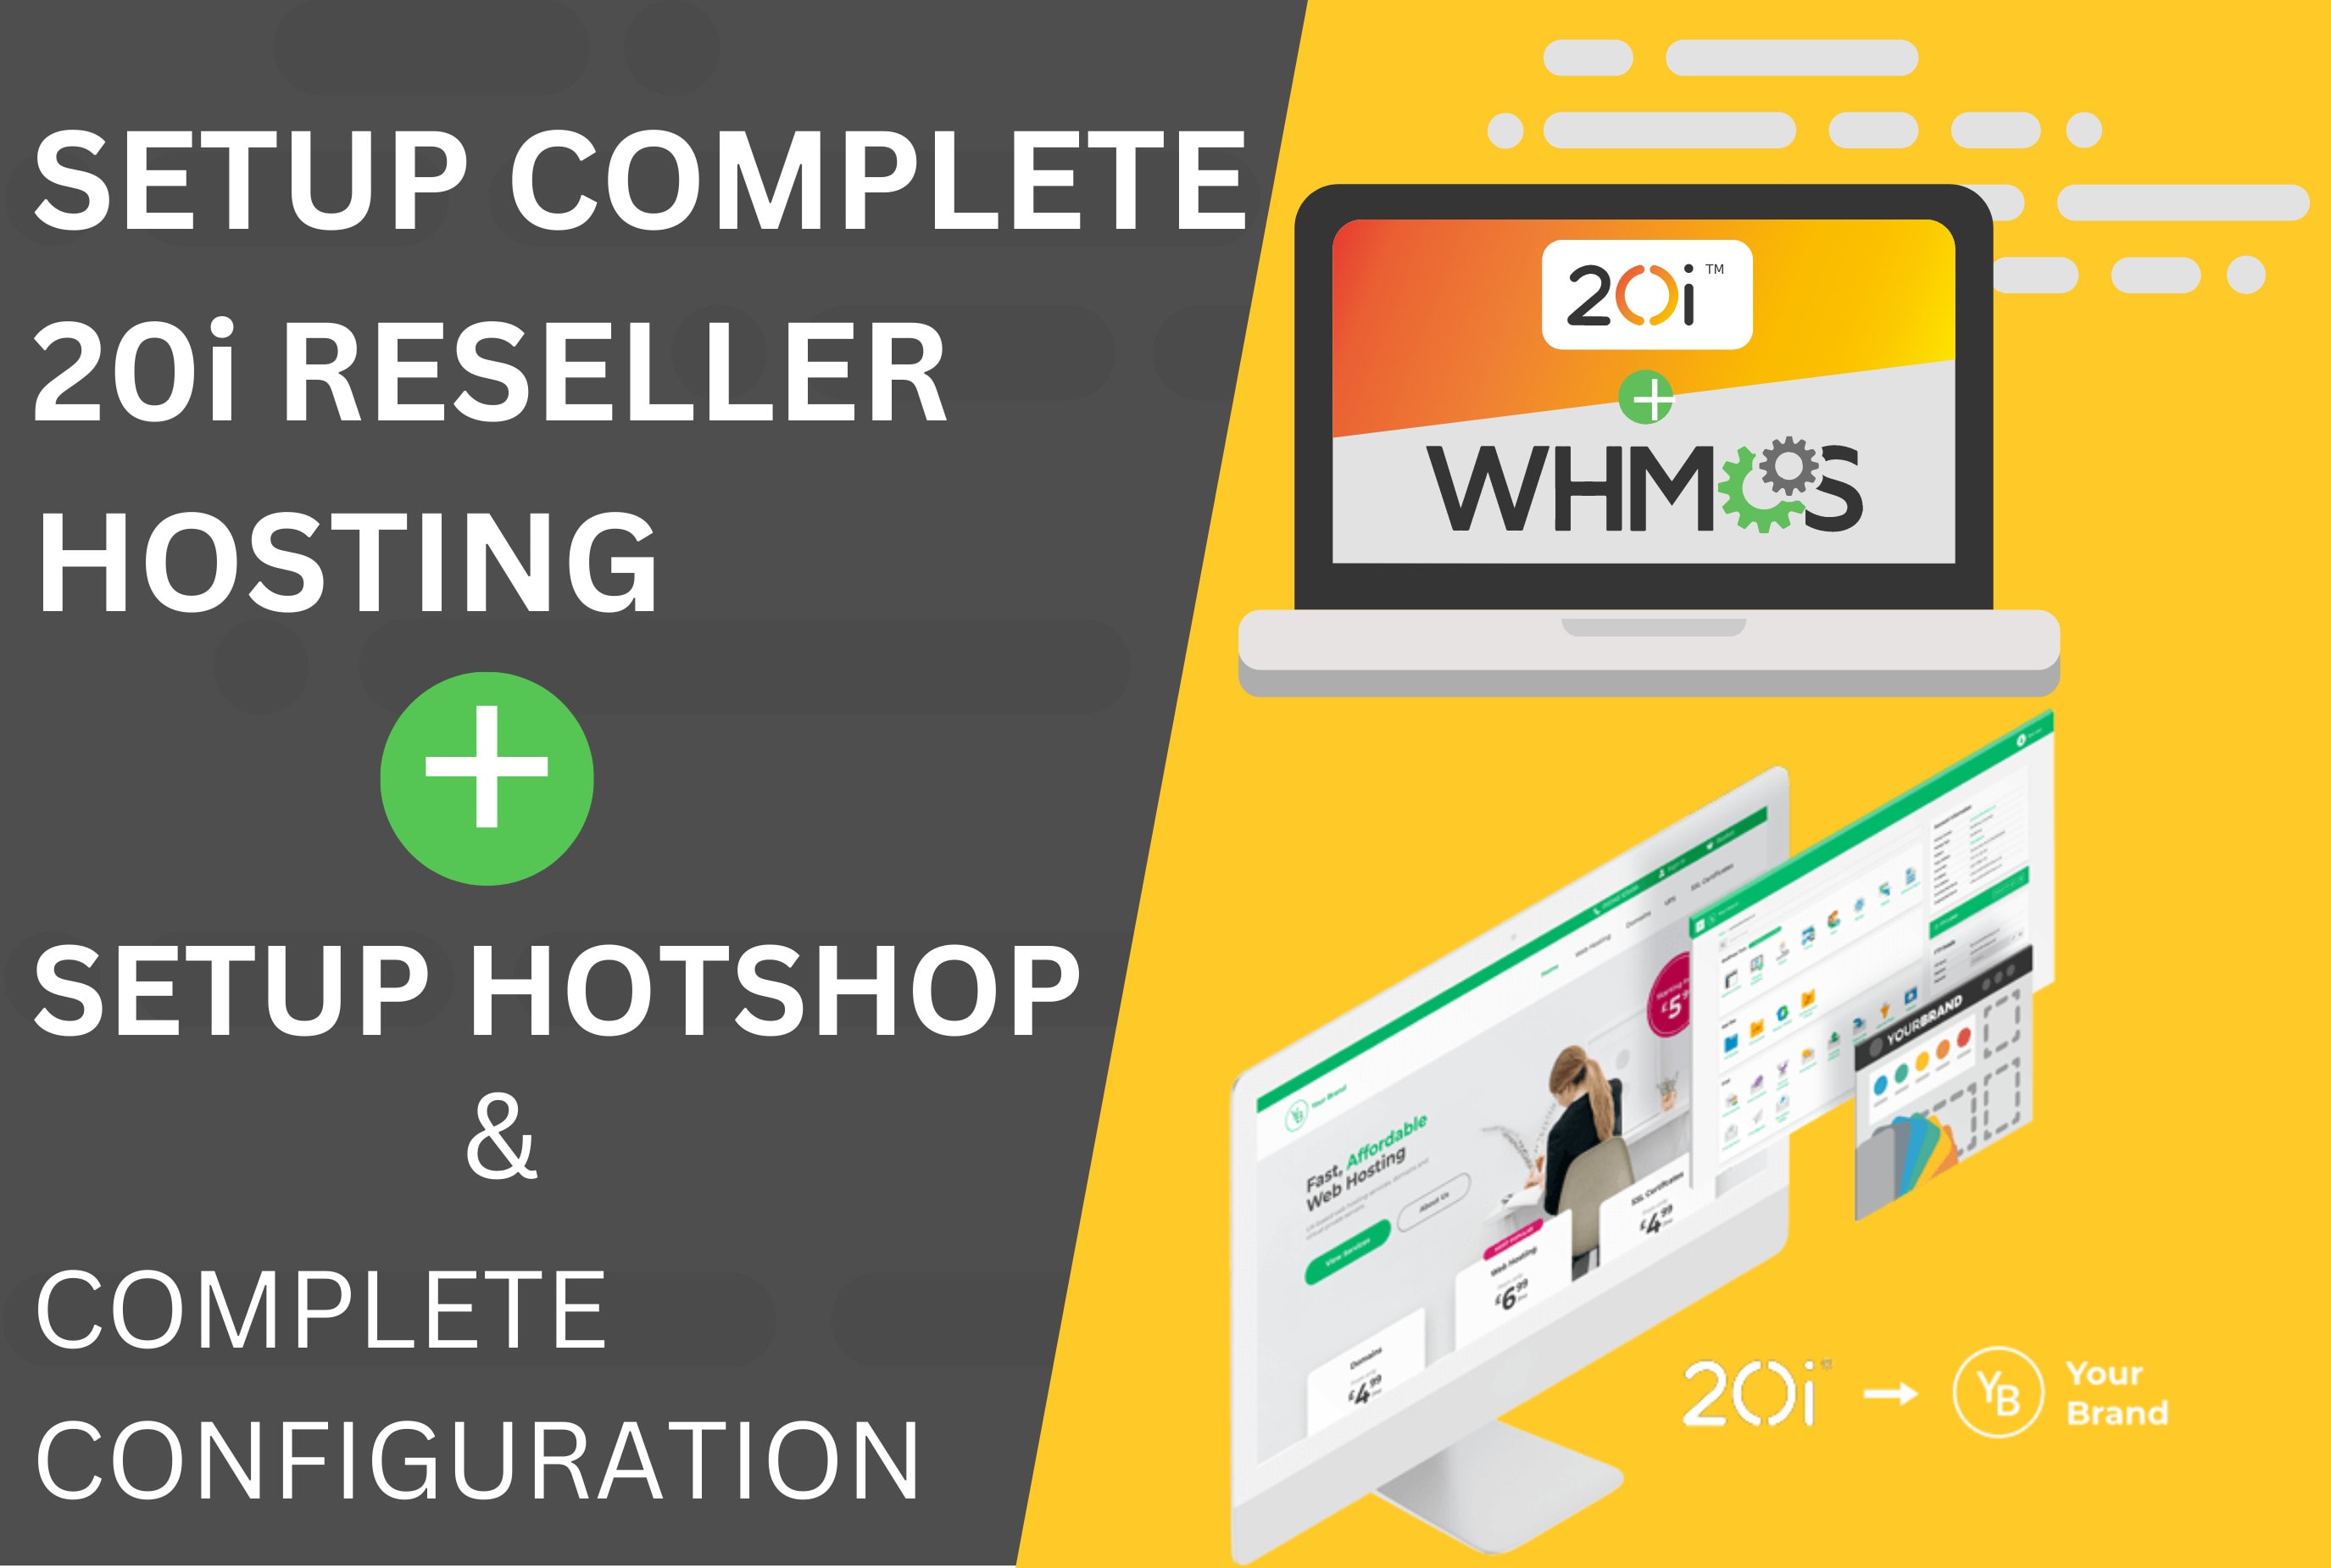 Setup 20i reseller hosting business using whmcs or hostshop by Hostdaddy